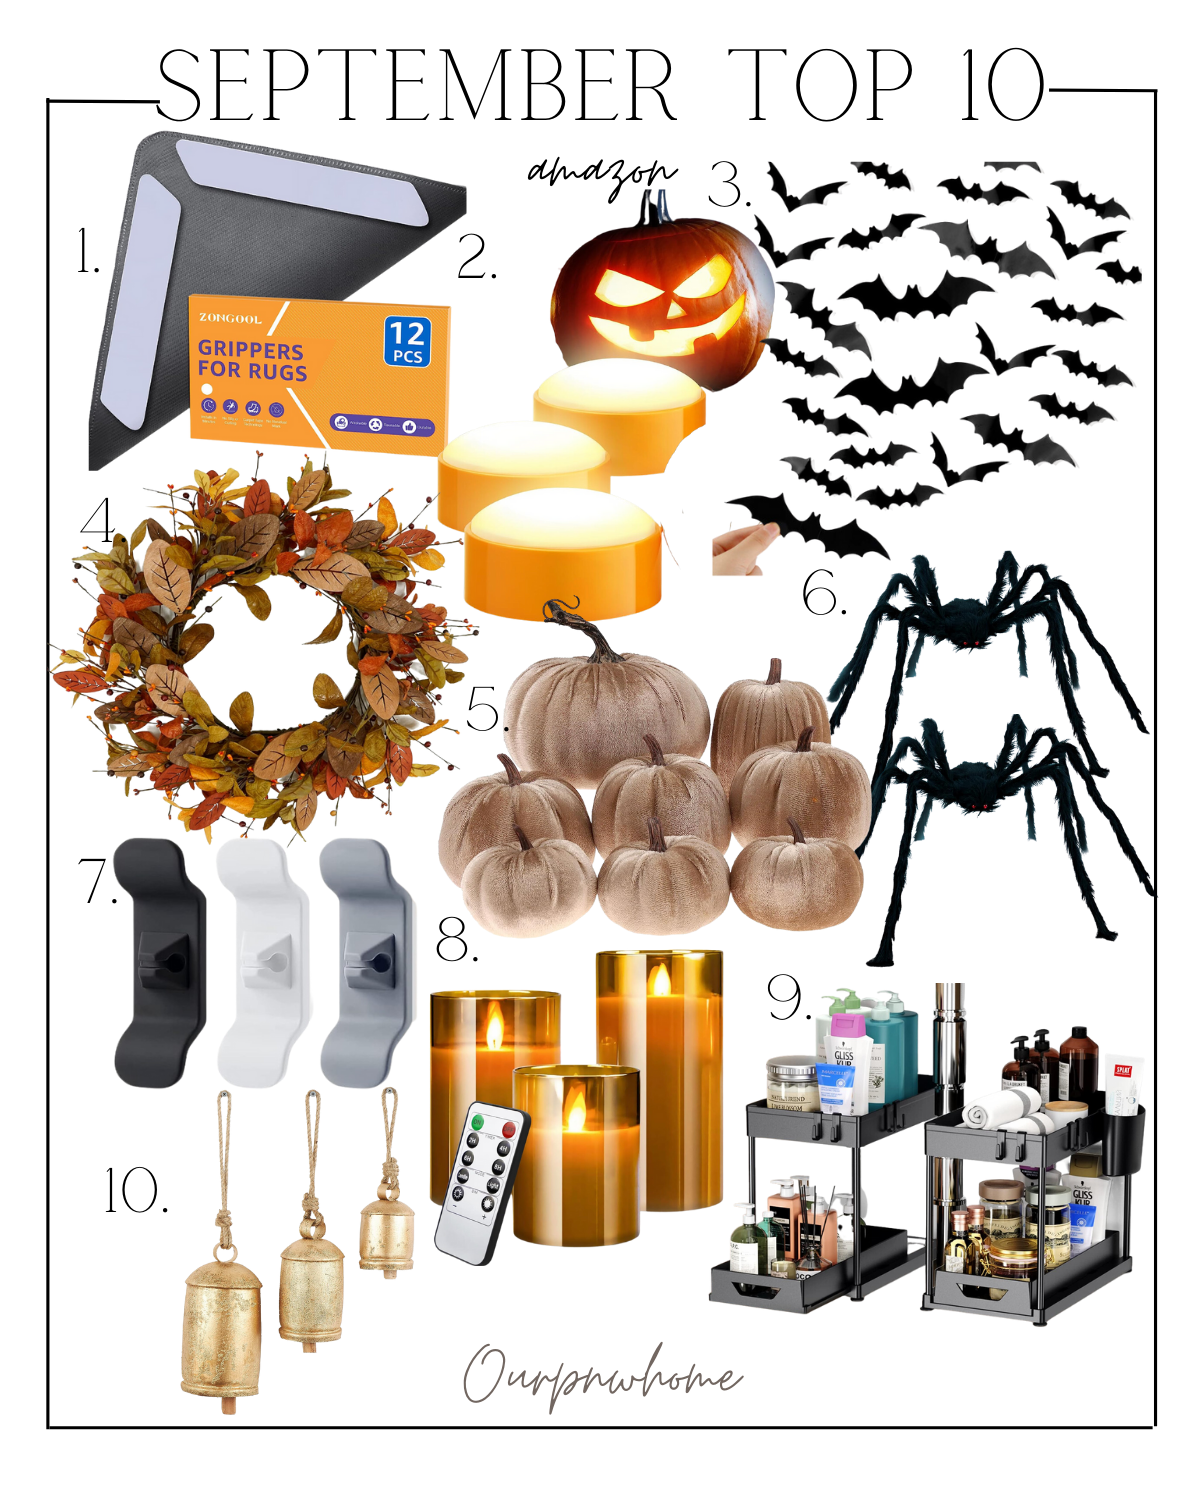 september's best selling items | #september #best #selling #items #topsellers #fall #homedecor #rugtape #pumpkin #lighting #bats #halloween #wreath #velvet #spiders #spooky #cord #flameless #organizer